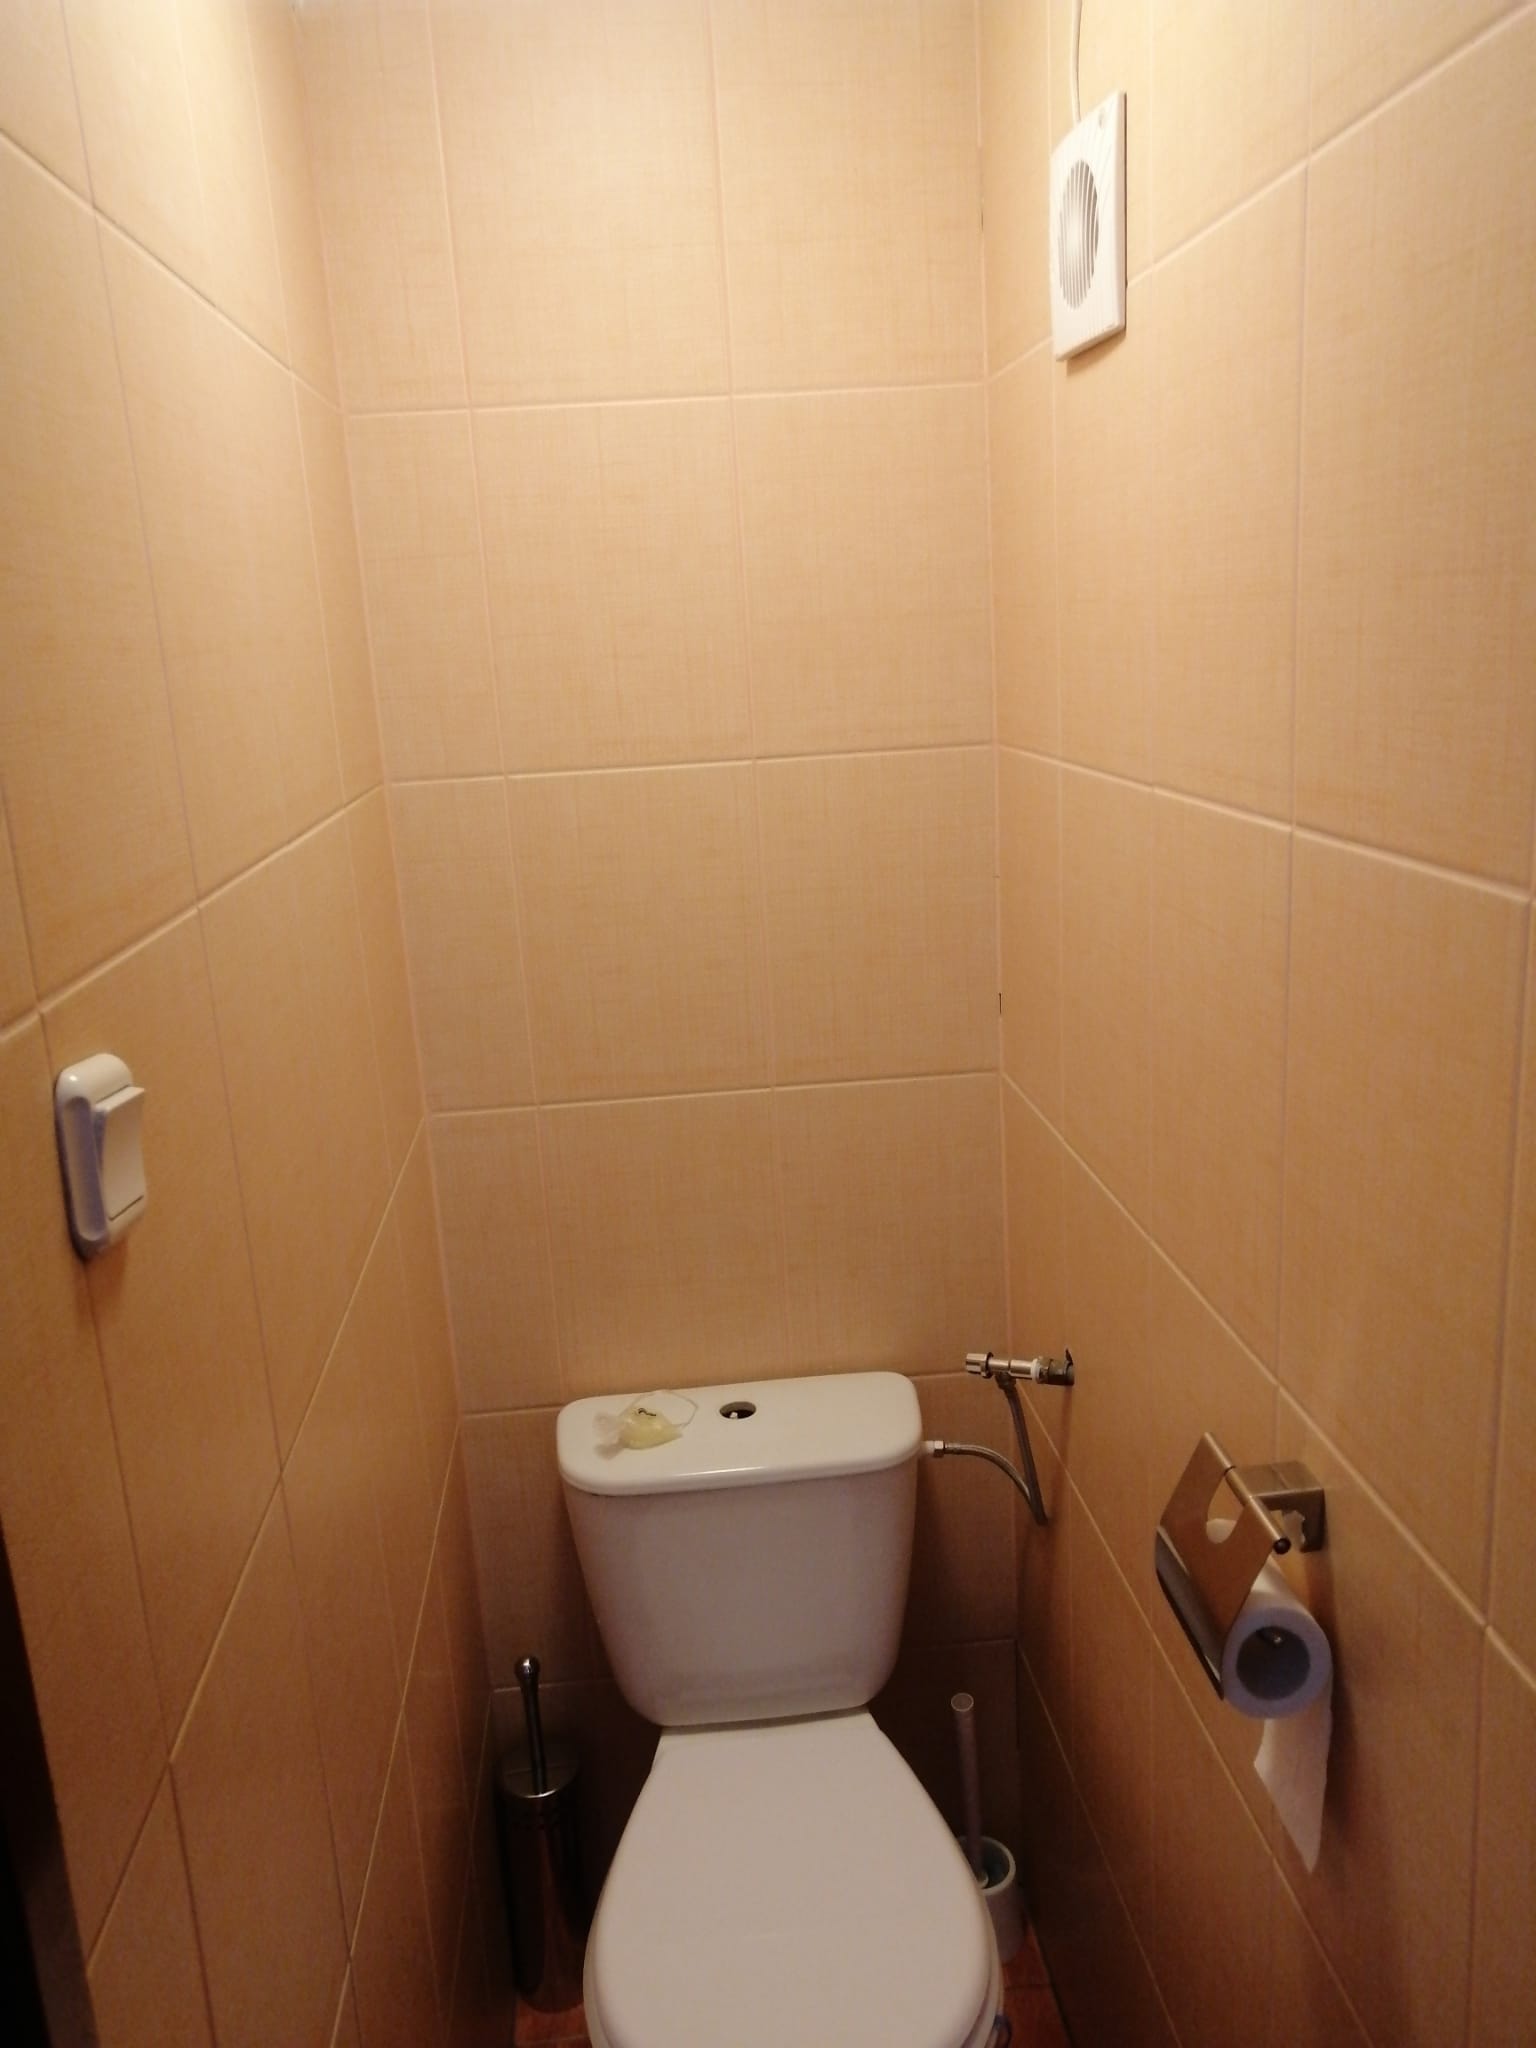 Apartment Toilet